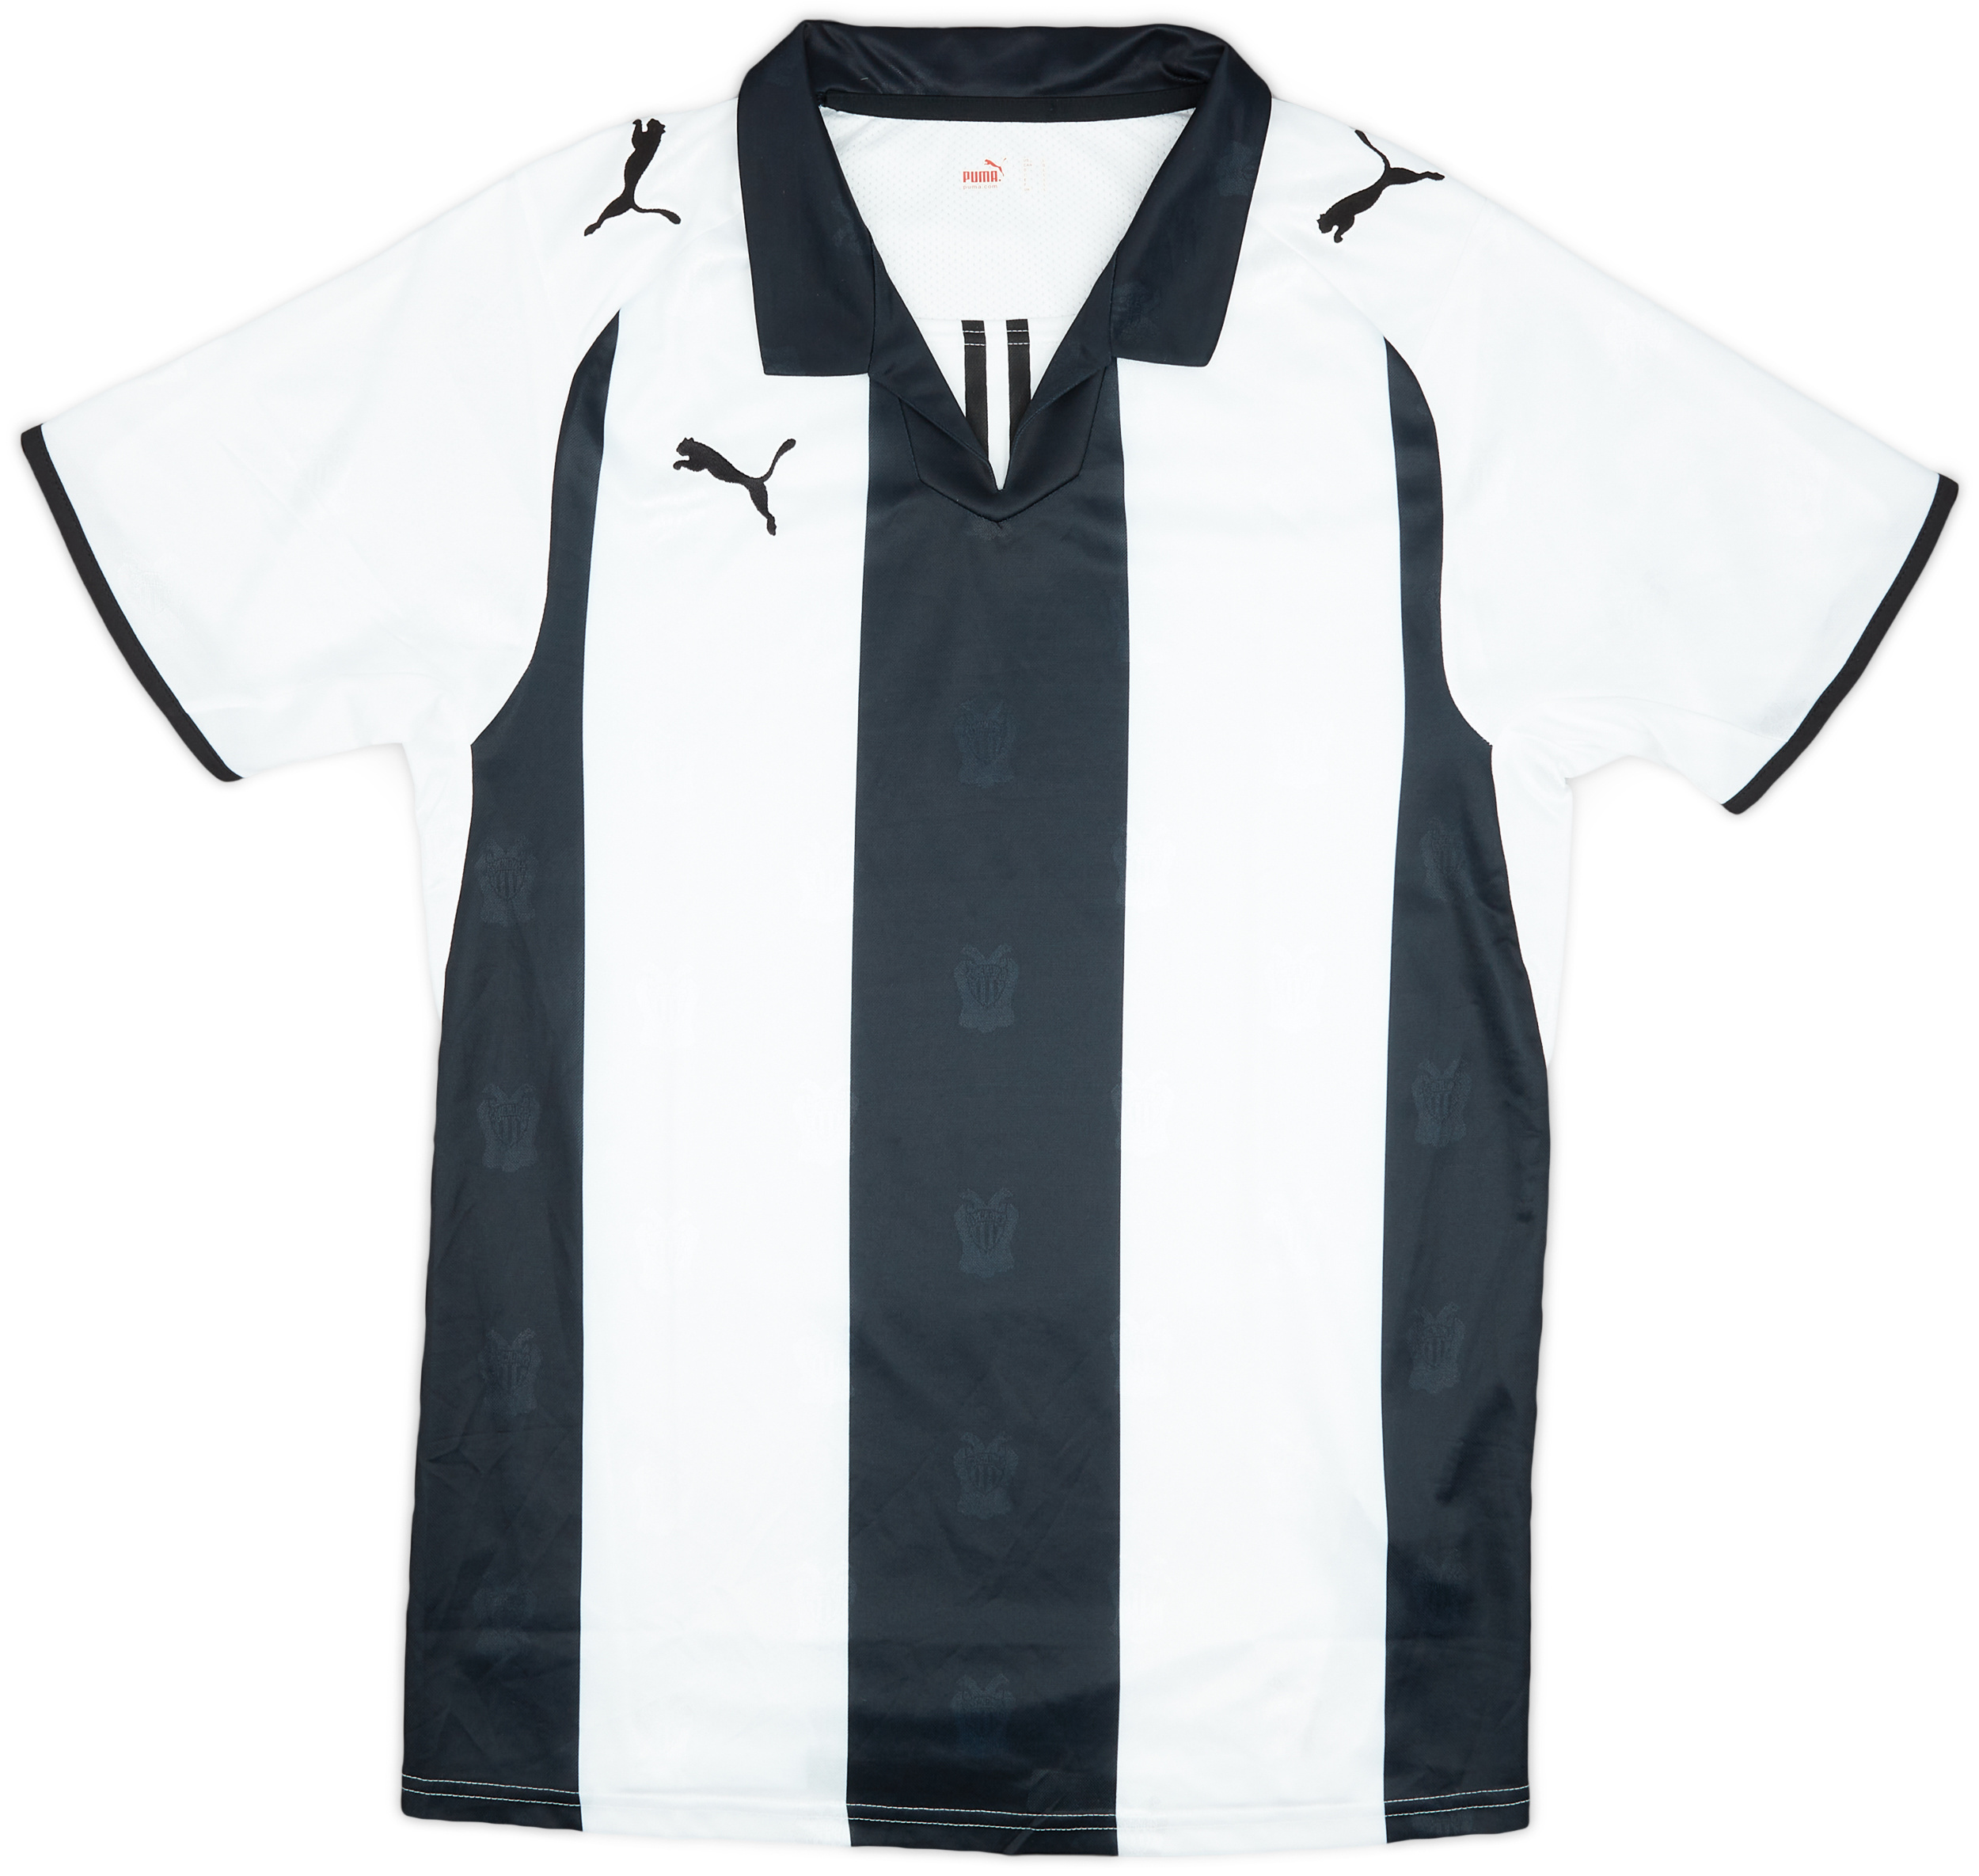 Retro PAOK FC Shirt